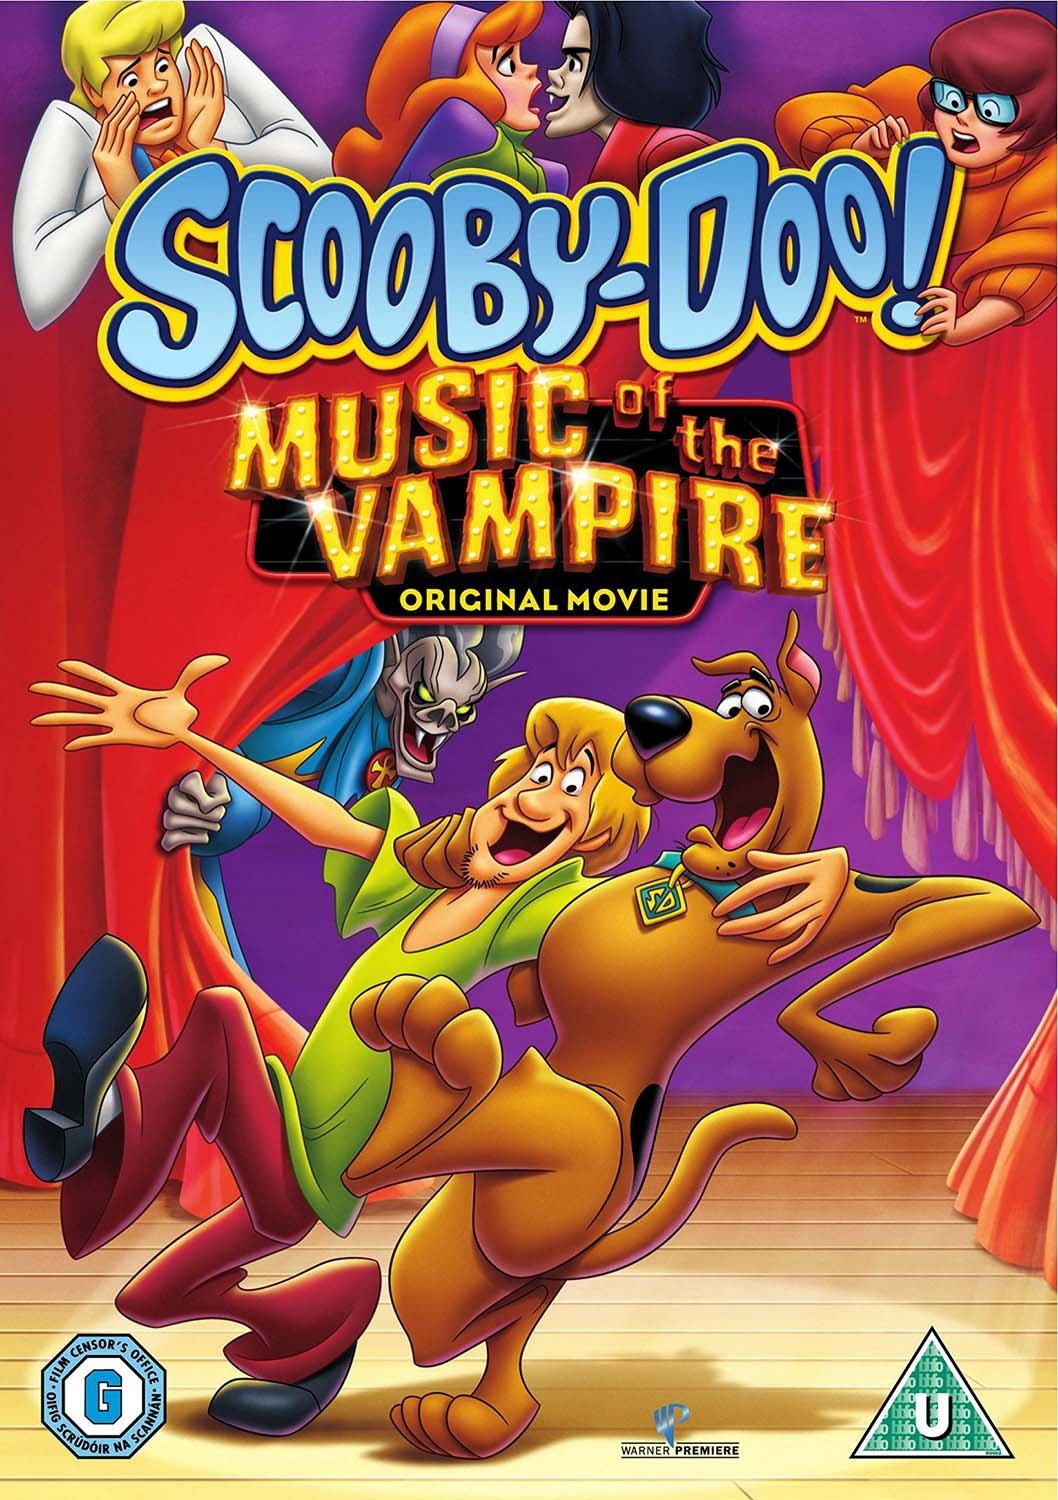 Scooby-Doo - Peliculas Animadas (1998-202?) [1080p]